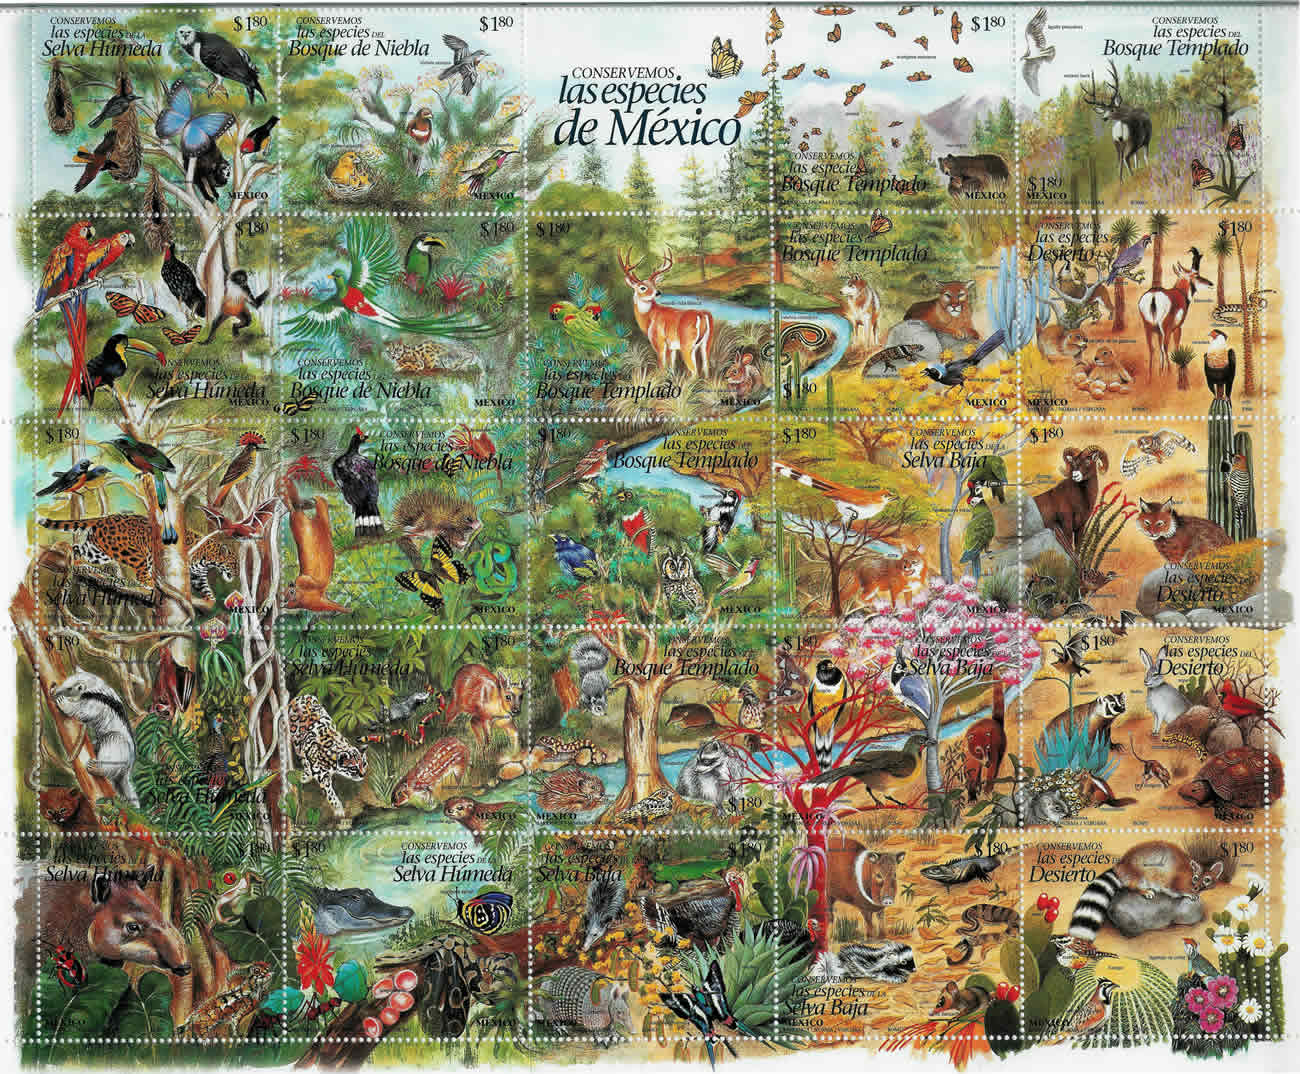 Bloque de 25 valores "Conservemos las especies de M?xico" 1996